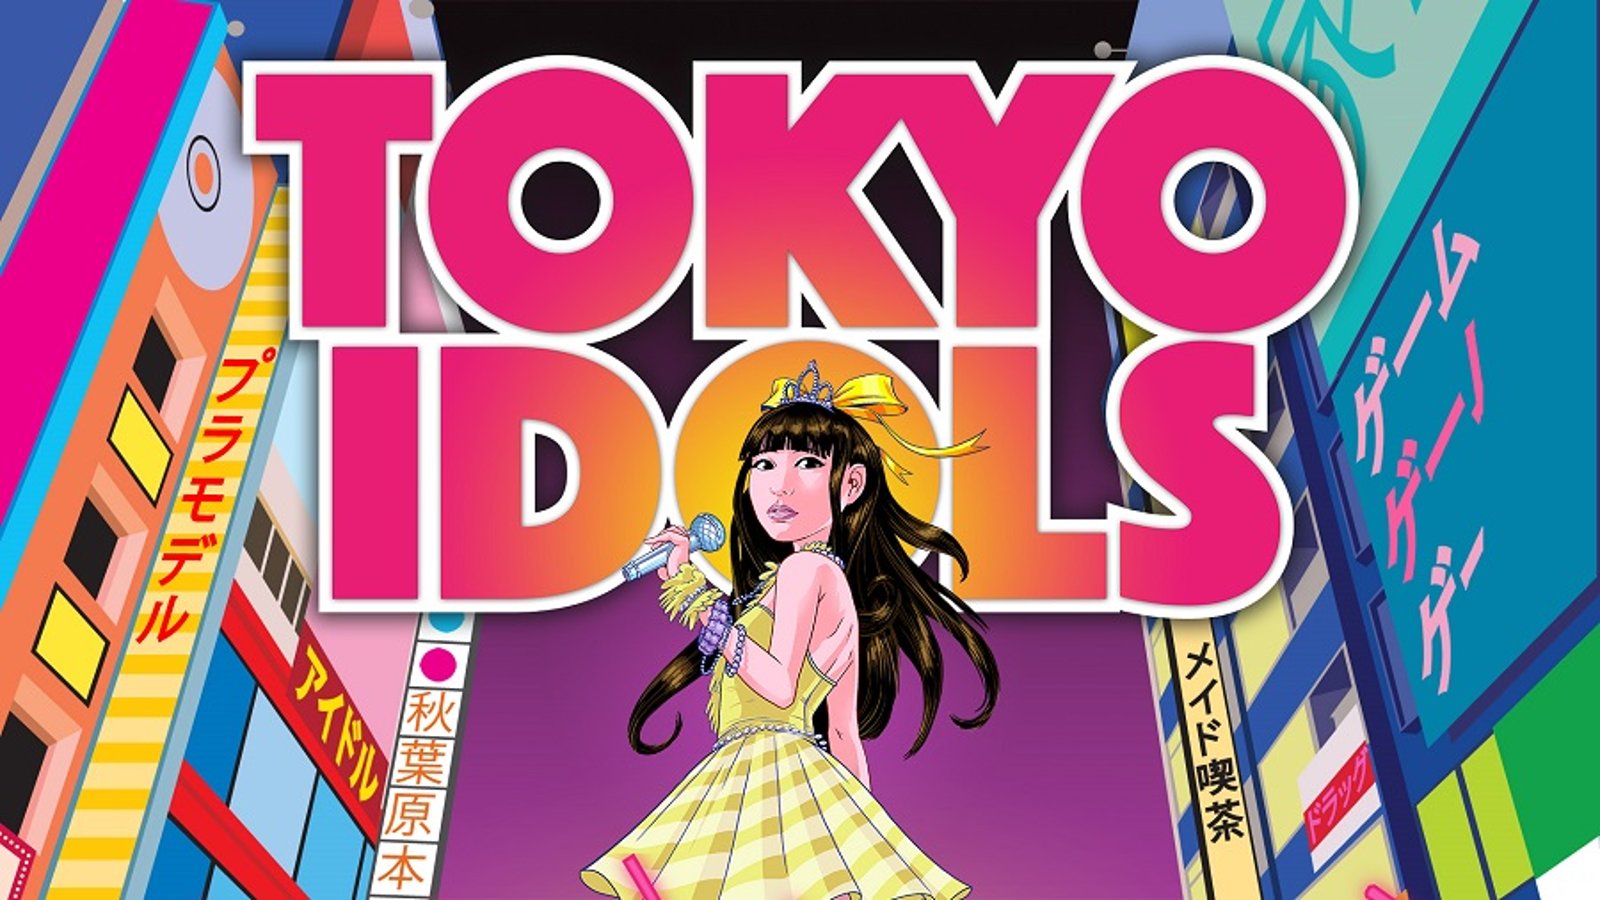 Tokyo Idols - A Fascinating Look at Sex & Gender in Japan